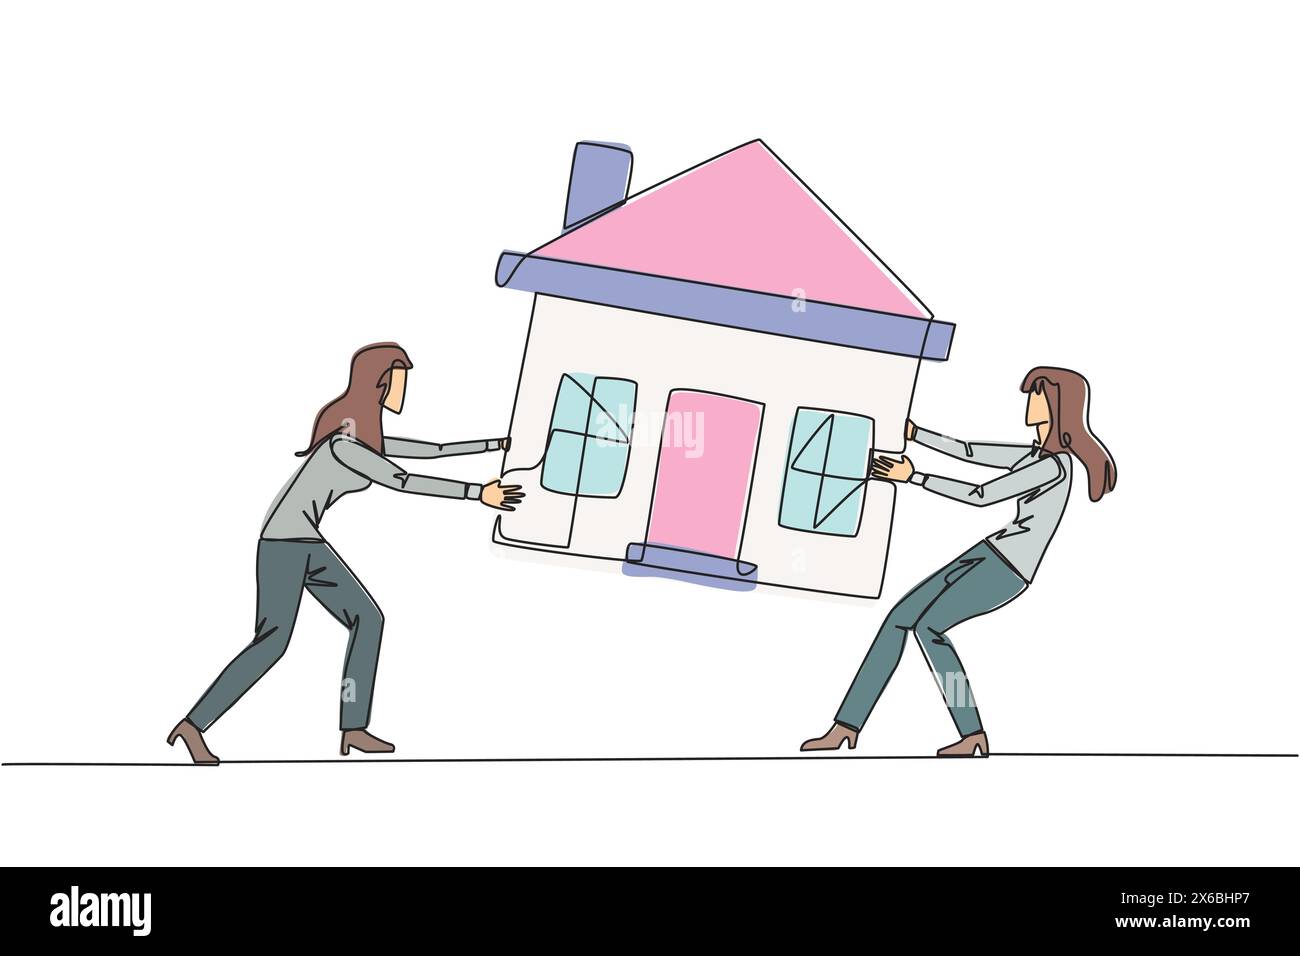 Simple une ligne dessinant deux femmes d'affaires émotionnelles se battant sur la maison miniature. Le concept de la lutte pour la maison luxueuse qu'ils ont vraiment wa Illustration de Vecteur